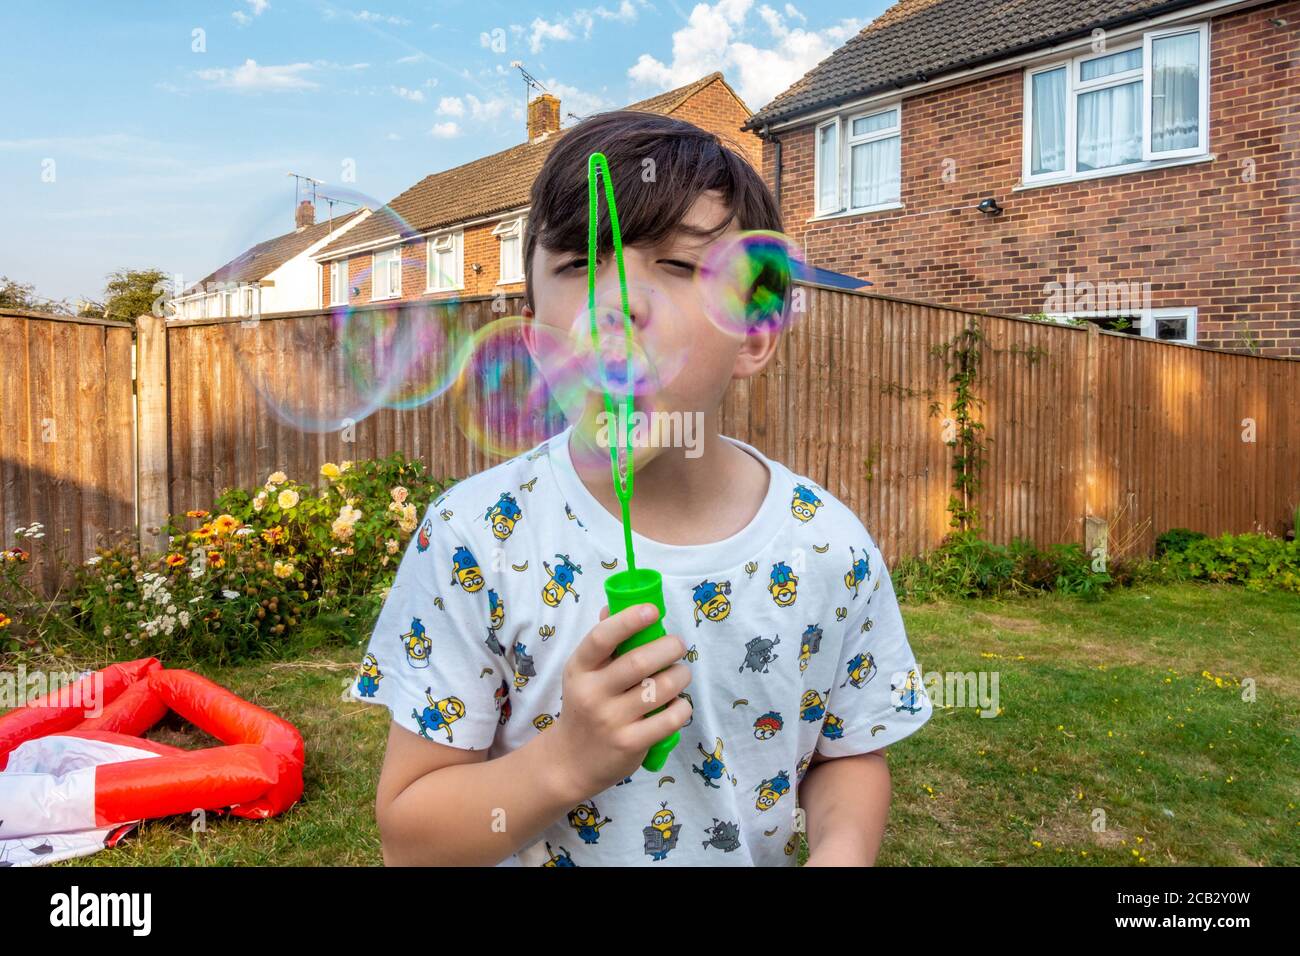 Un jeune garçon souffle de la bulle dans son jardin arrière. Banque D'Images